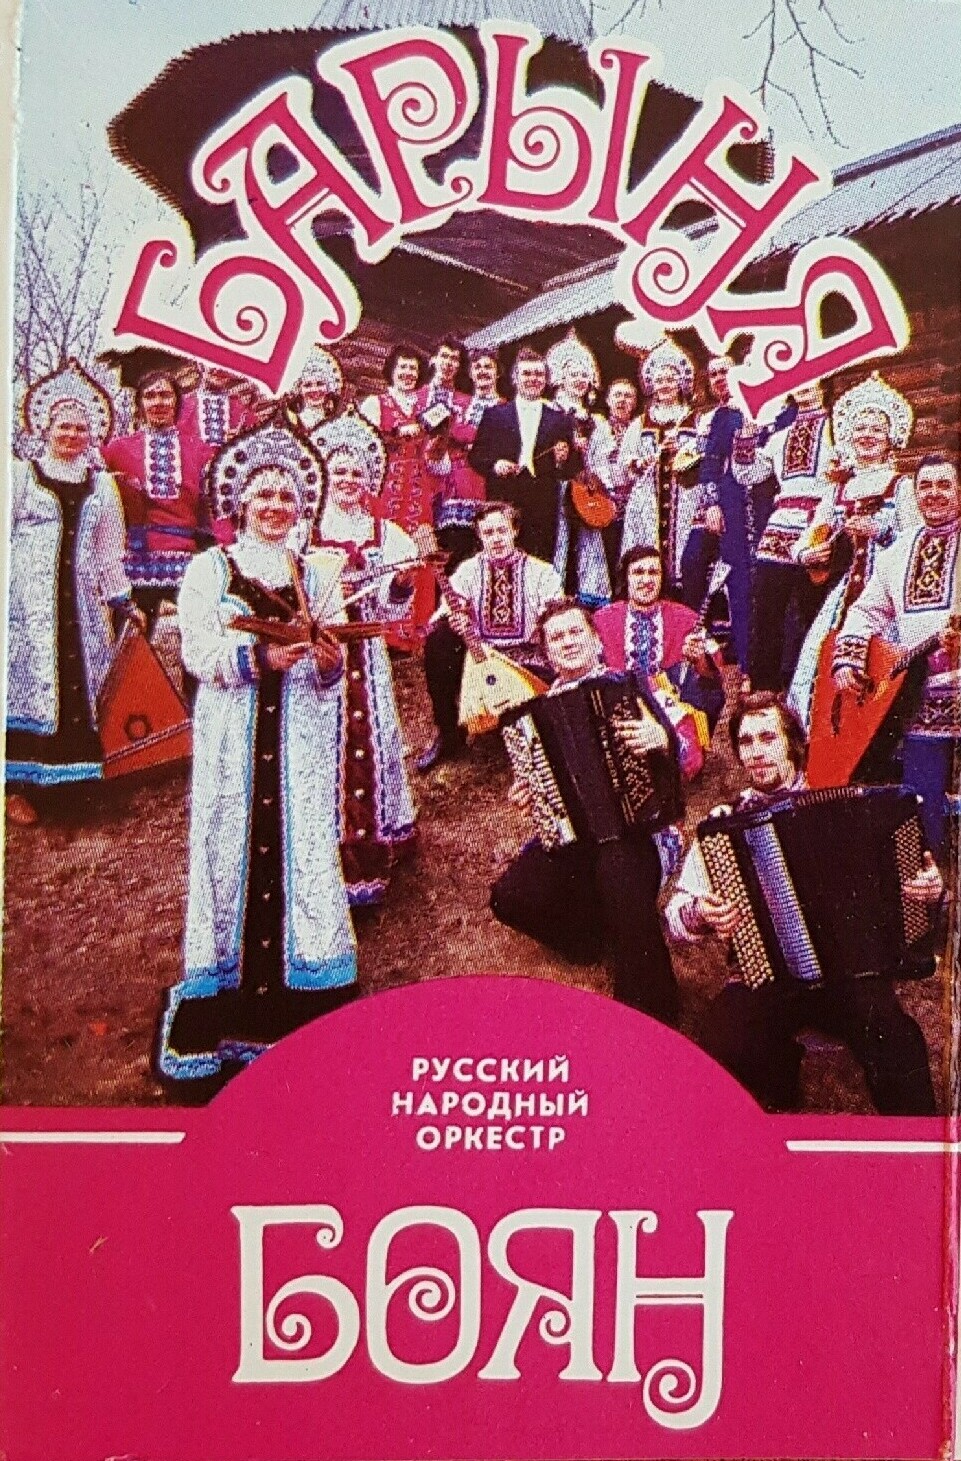 Русский народный оркестр "Боян". "Барыня". Русские народные песни